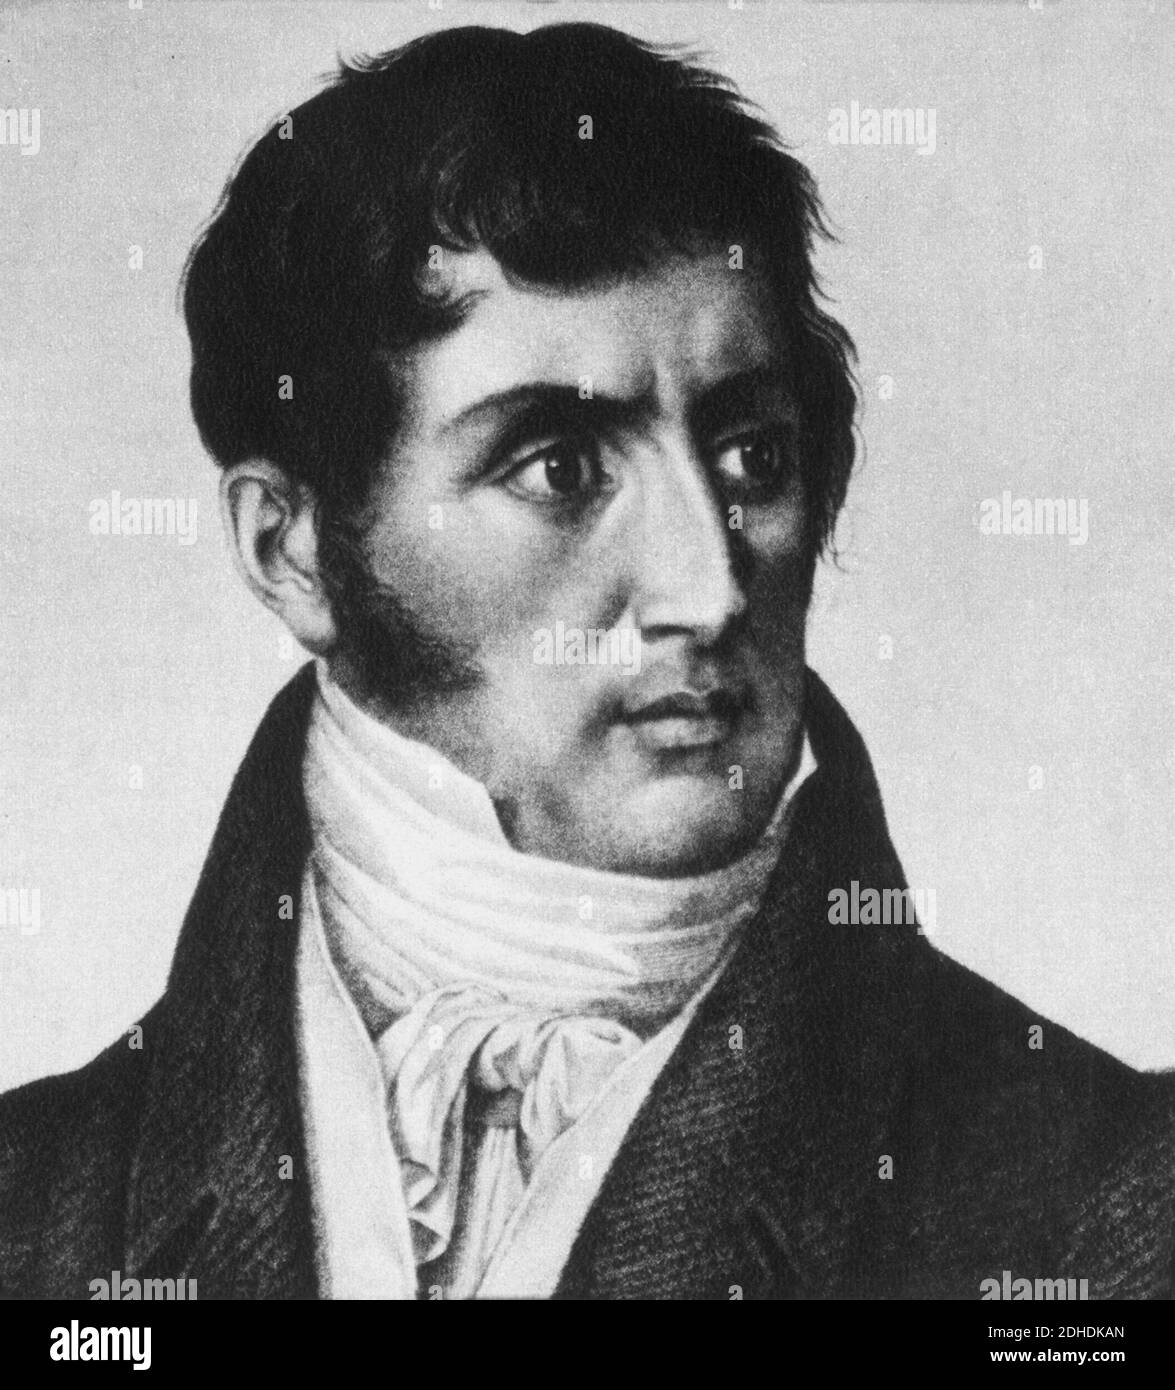 1825 , ITALIEN : der berühmteste italienische Schriftsteller ALESSANDRO MANZONI ( 1785 - 1873 ) , Autor des Buches " I Promessi Sposi " ( 1827 - 1842 ) - SCRITTORE - LETTERATO - LETTERATURA - LITERATUR - Portrait - ritratto - favoriti - Basetta - Basette - Kragen - colletto - Krawatte - cravatta - ROMANTICO - ROMANTICISMO - ROMANTIK - ROMANTISCH ---- Archivio GBB Stockfoto